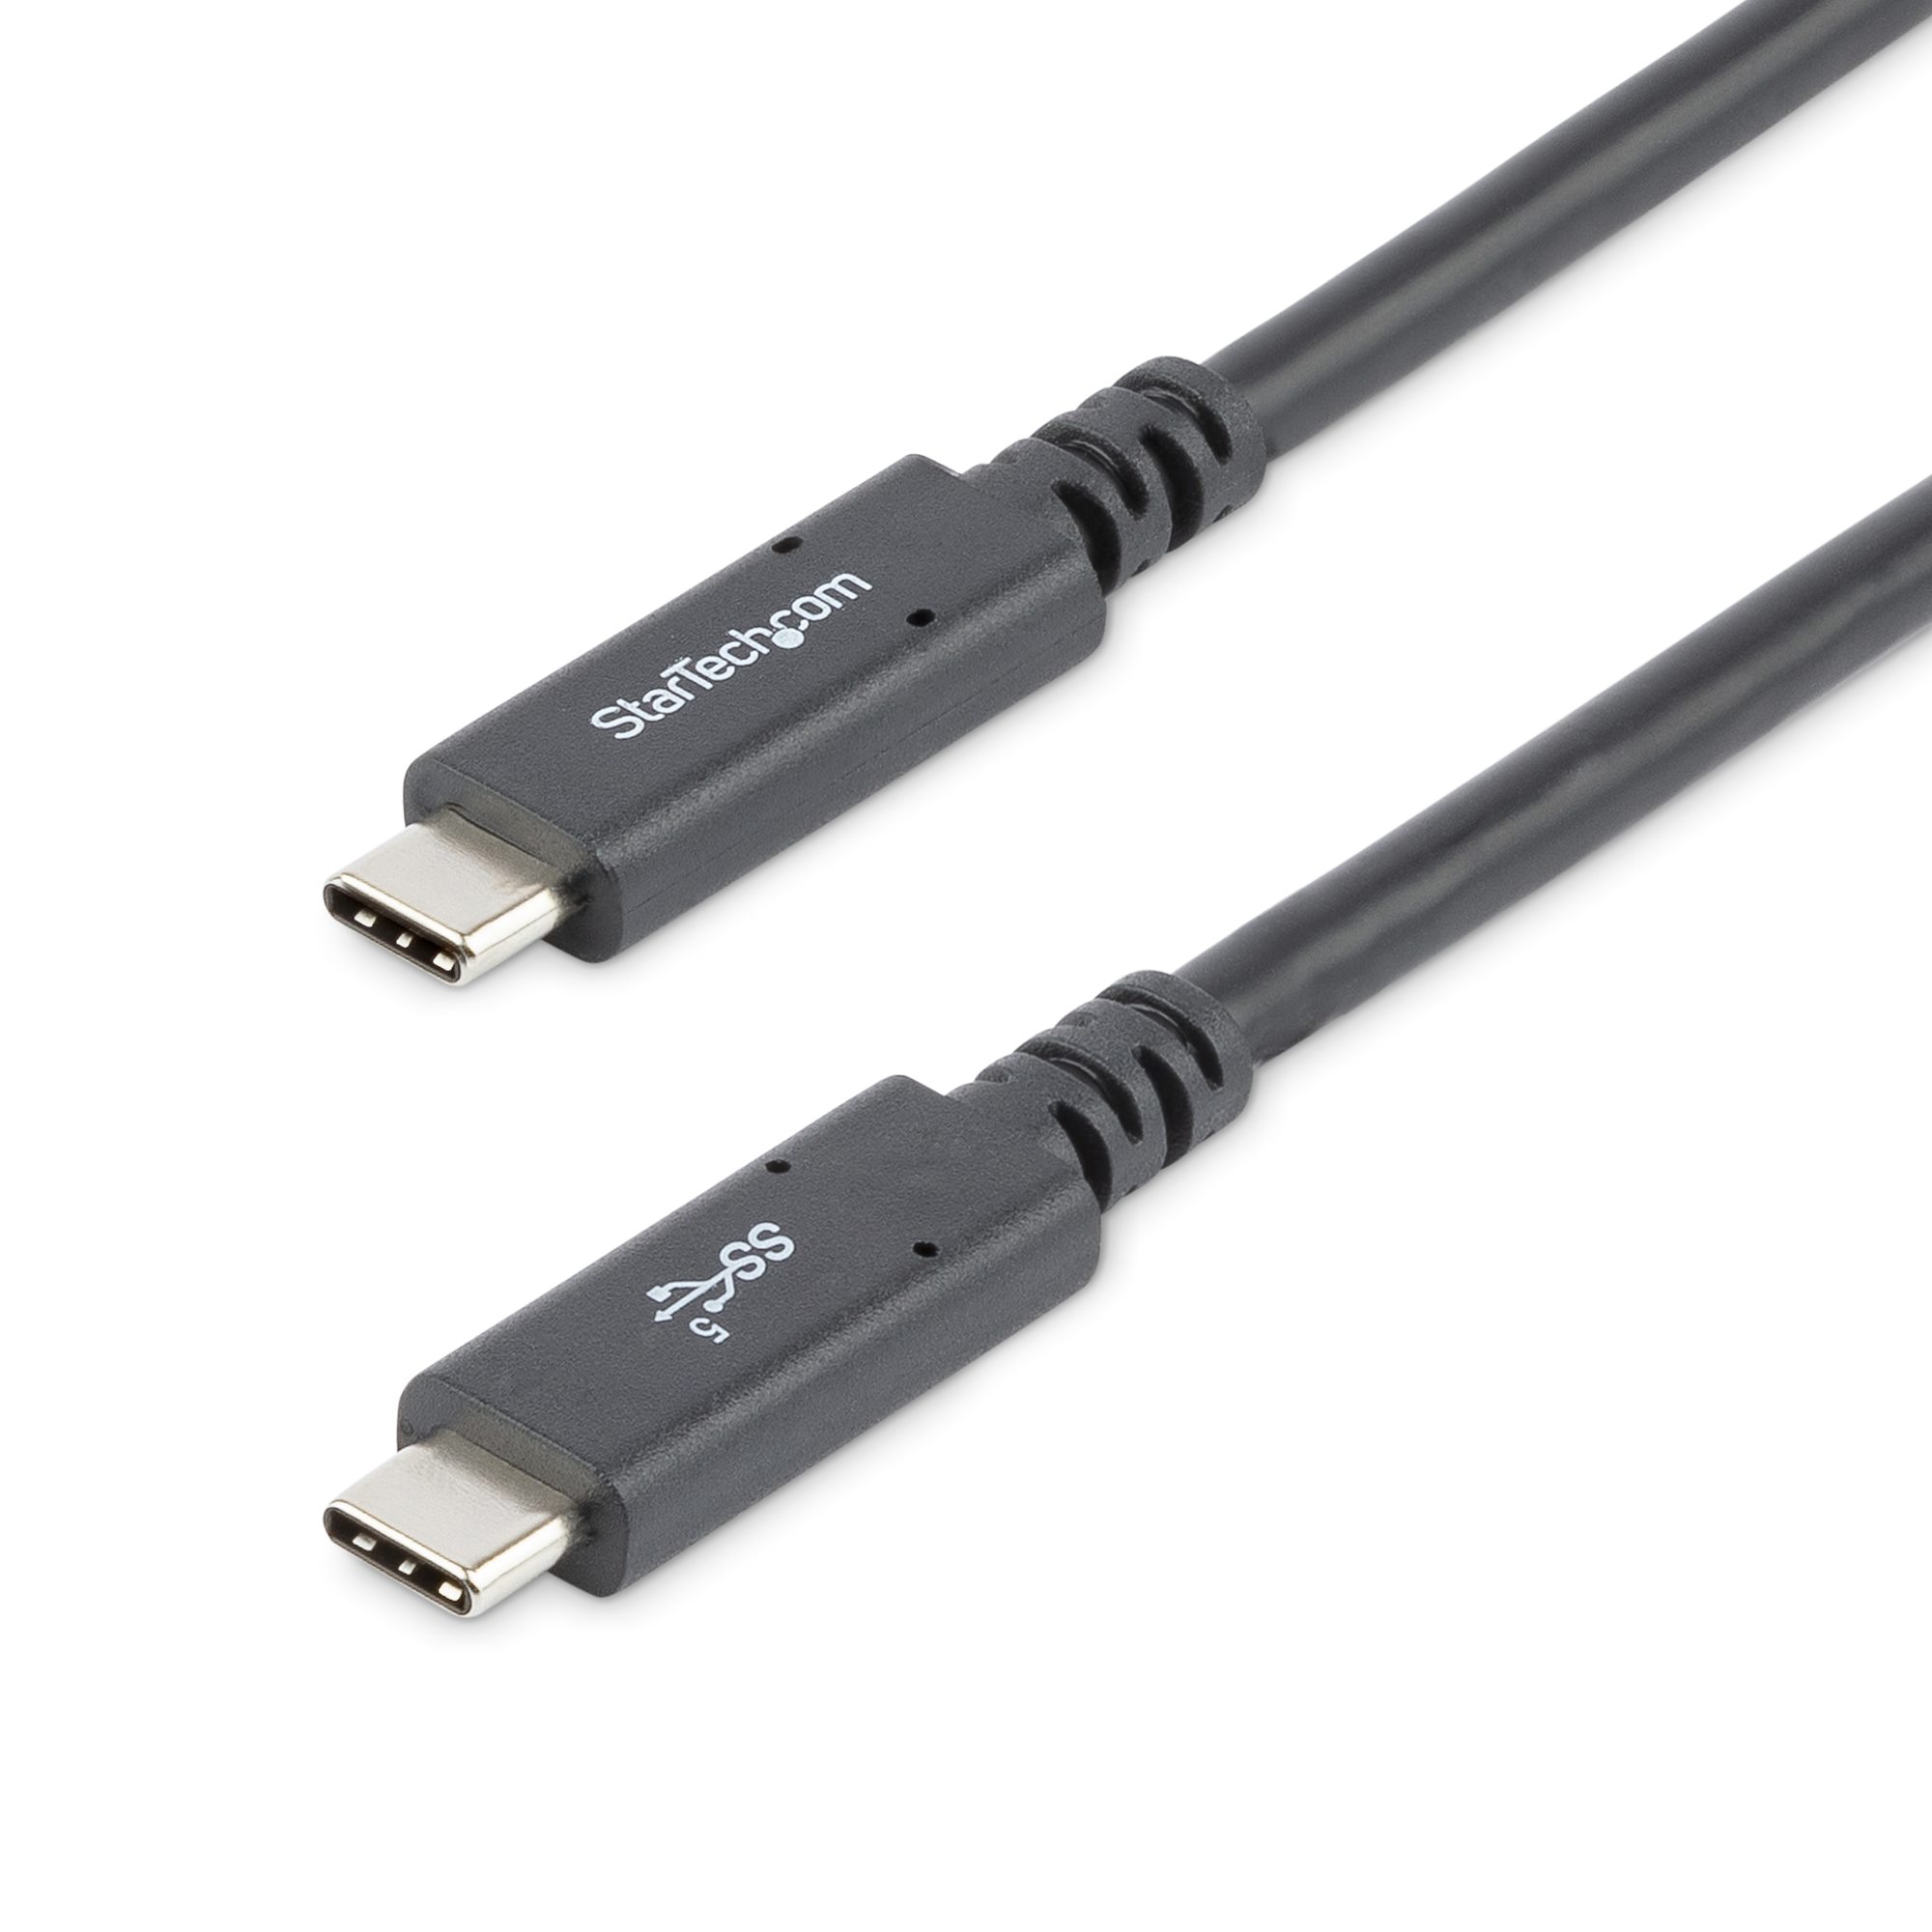 USB315C5C6 StarTech.com, Cable Assemblies